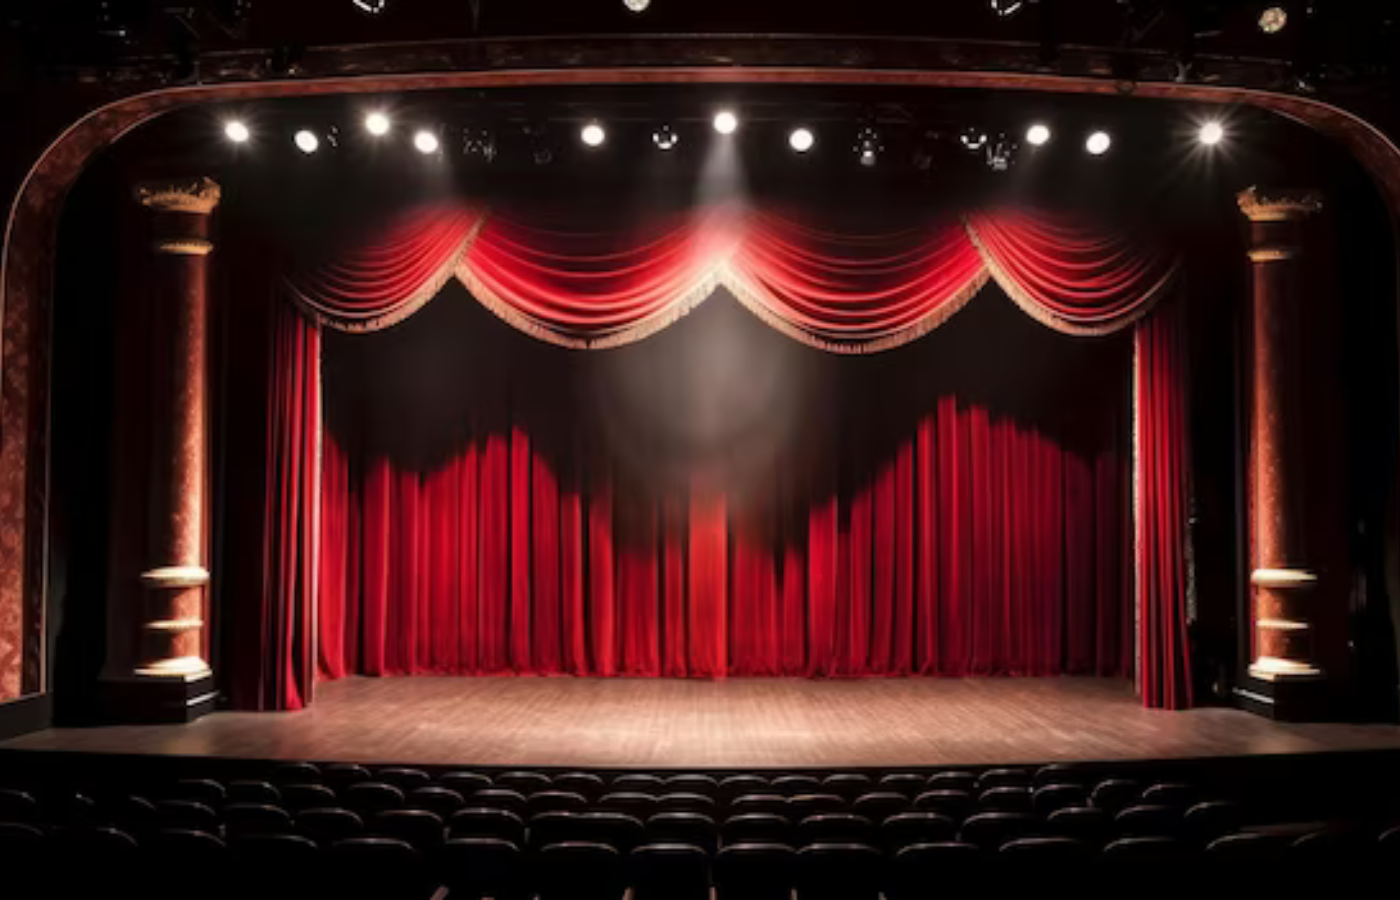 ARTE – Teatro – Harmonia dos elementos de uma peça teatral